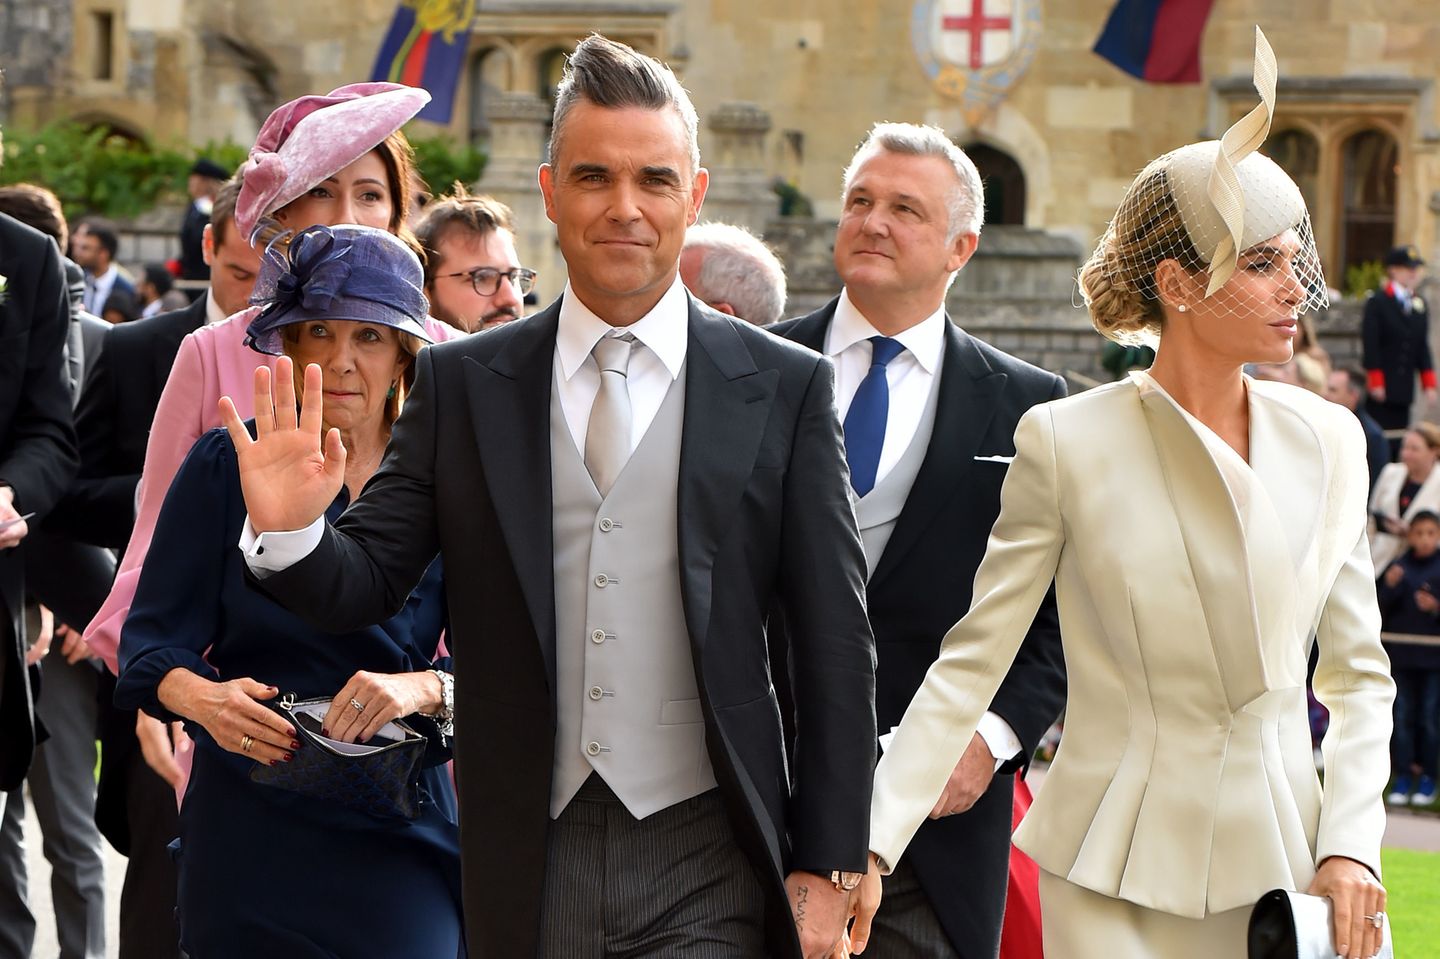 Eugenie-Hochzeit: Robbie Williams mit Ayda Fields auf dem Weg zu Eugenies Hochzeit